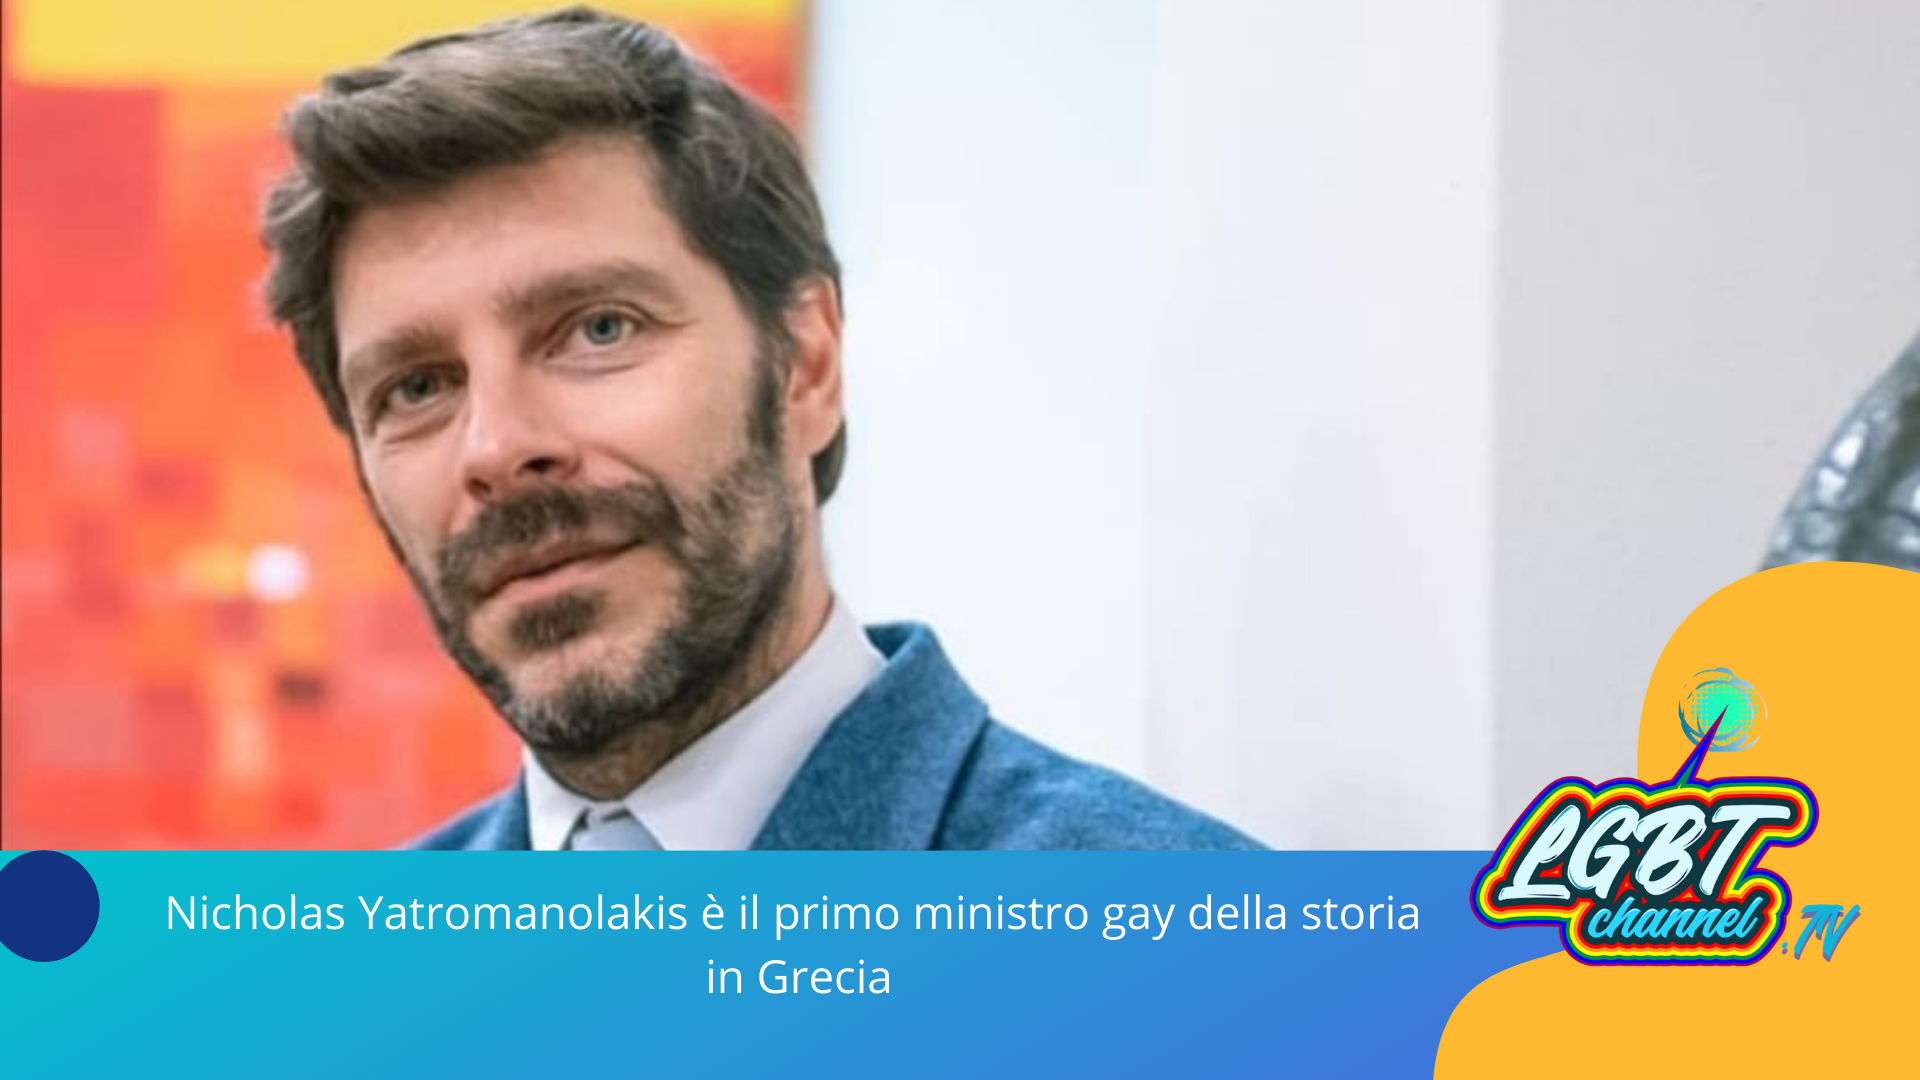 #News | Nicholas Yatromanolakis è il primo ministro gay della storia in Grecia